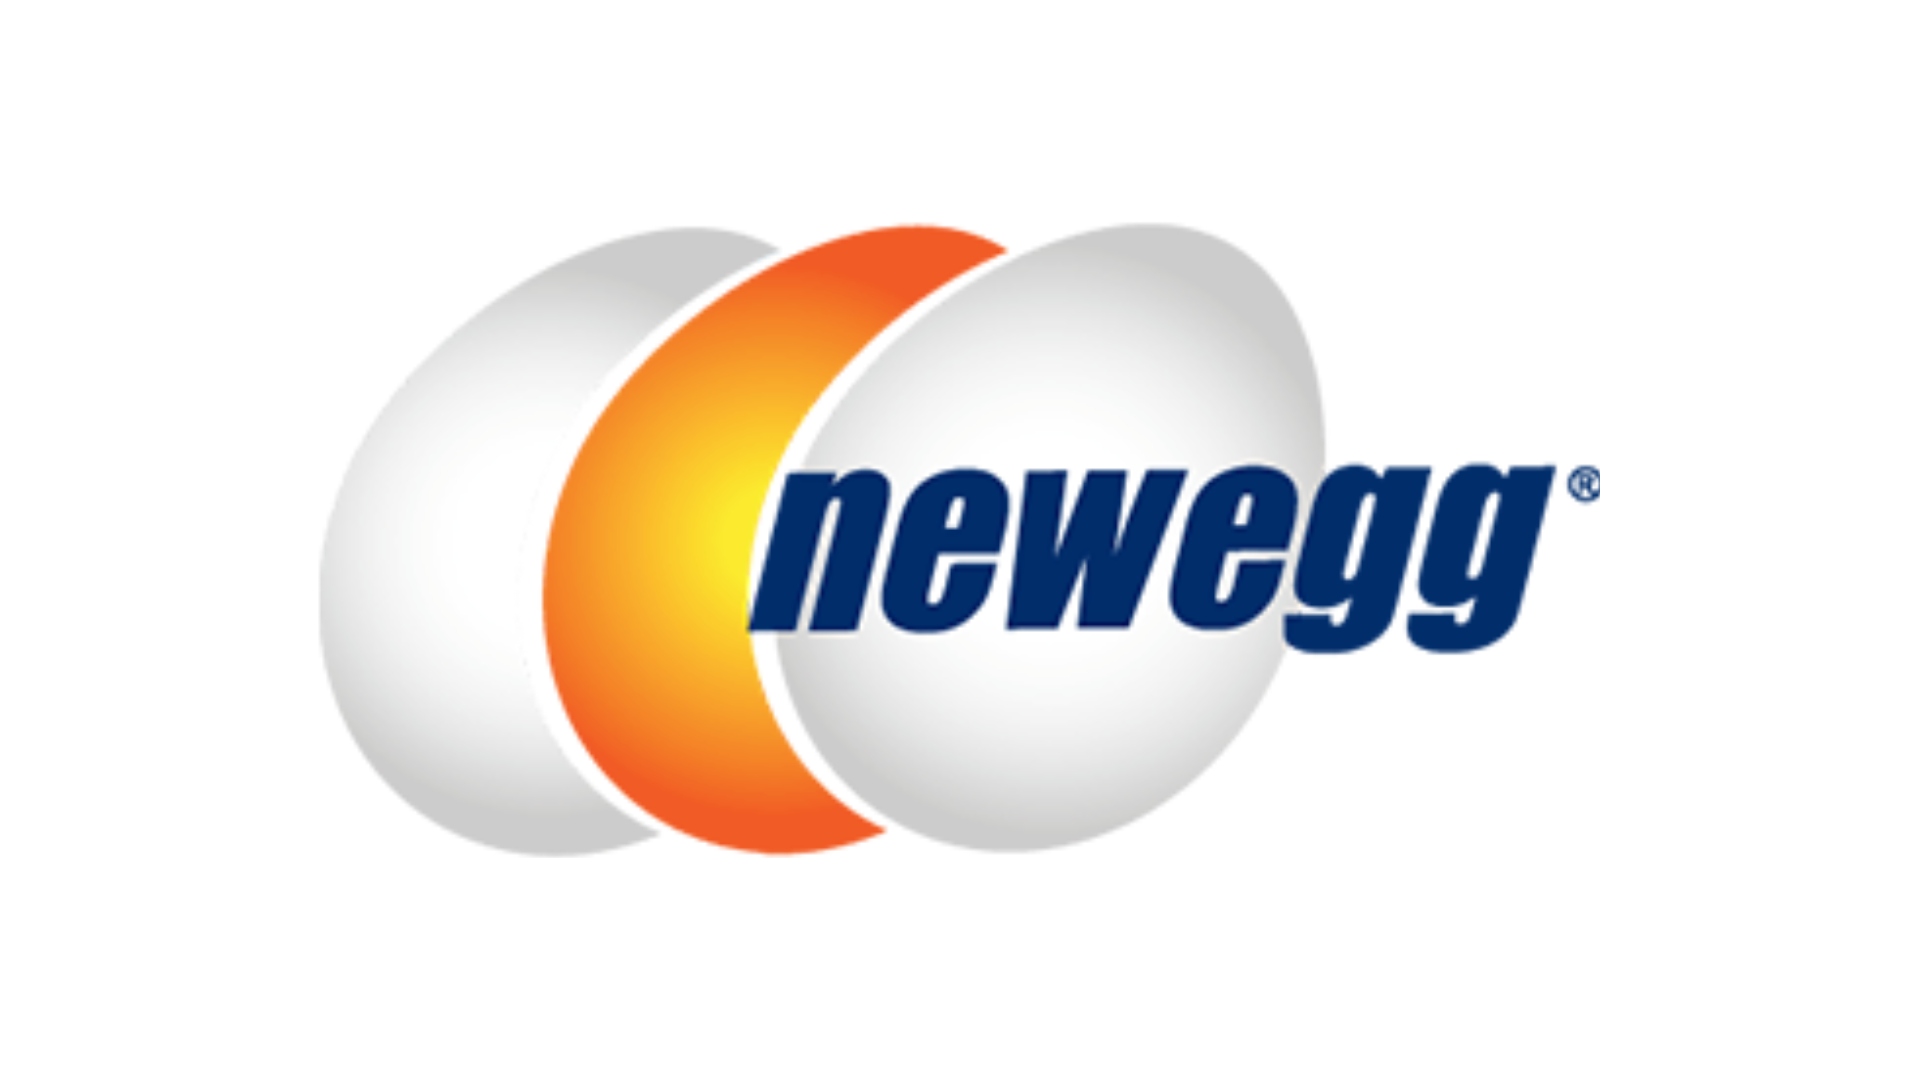 Los mejores sitios web para compilaciones de PC personalizadas, número 2: Newegg. El logotipo está sobre un fondo blanco